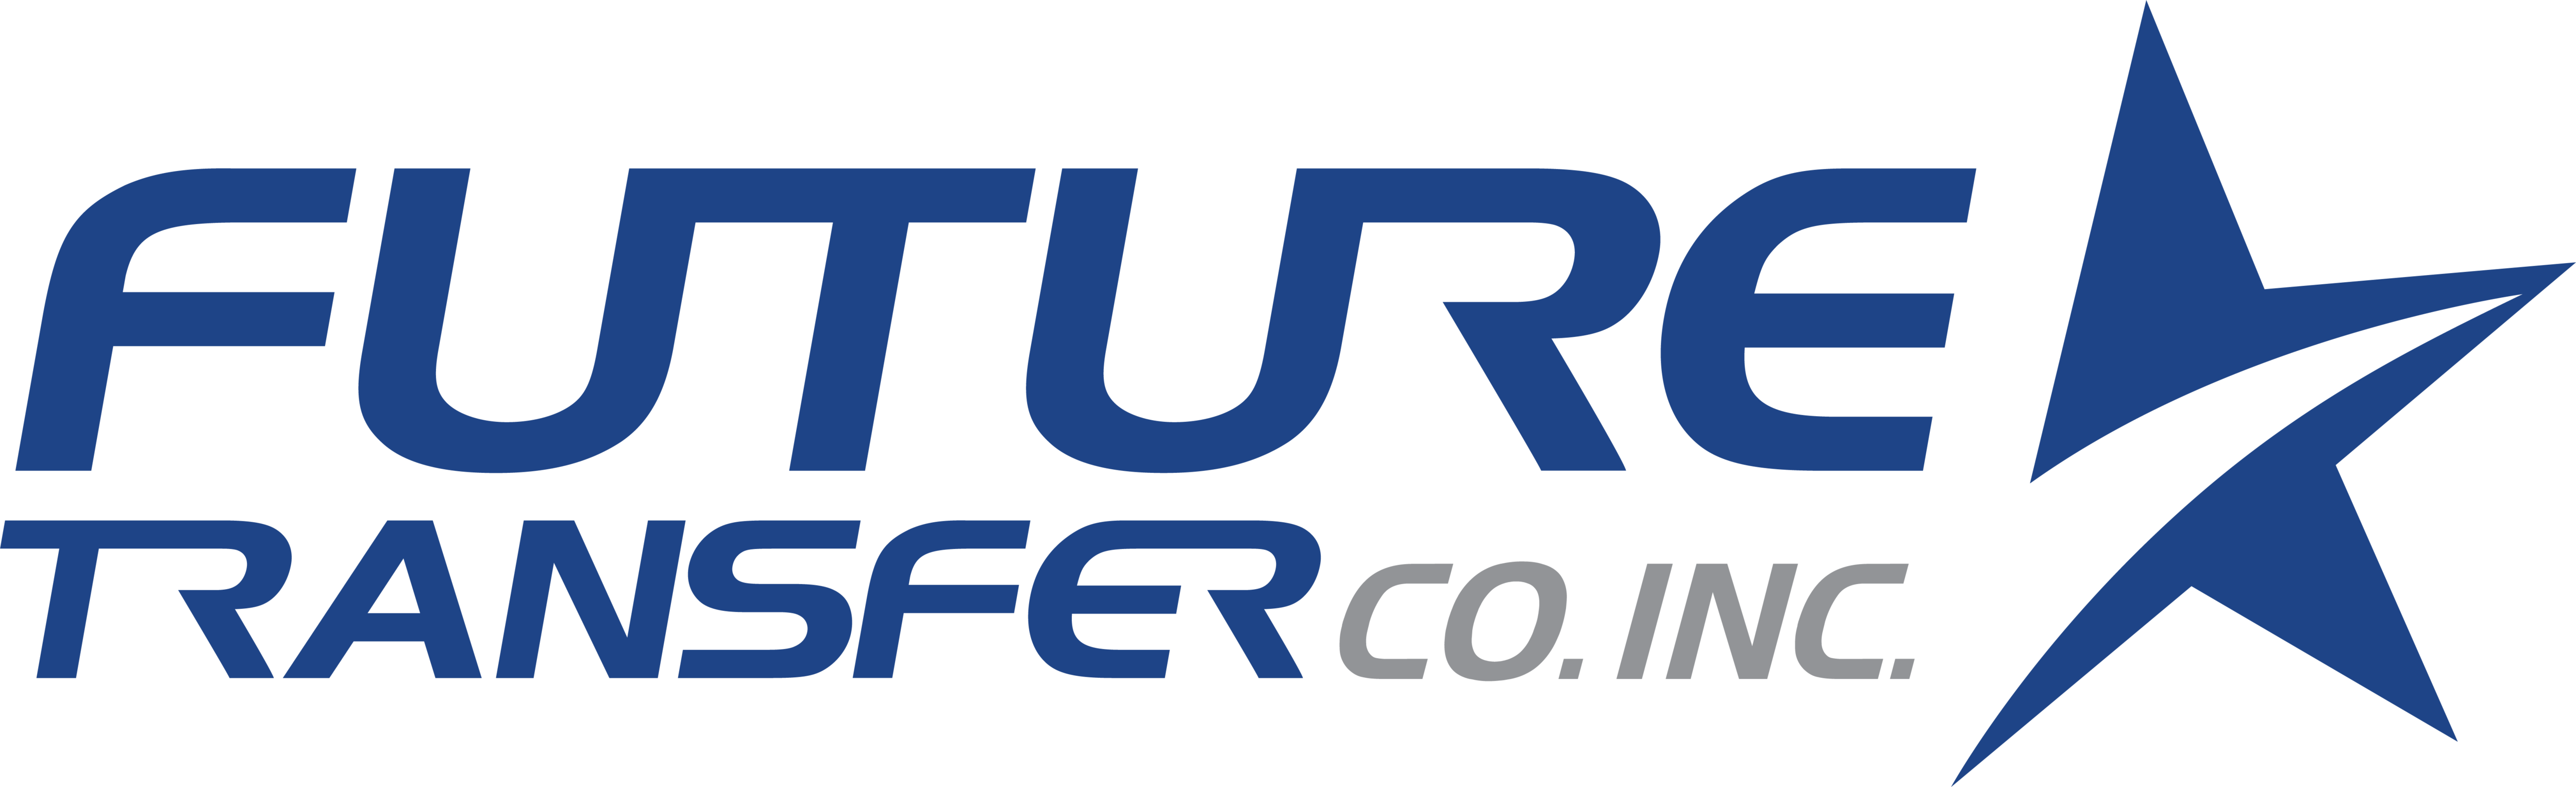 Future Transfer Co Inc.